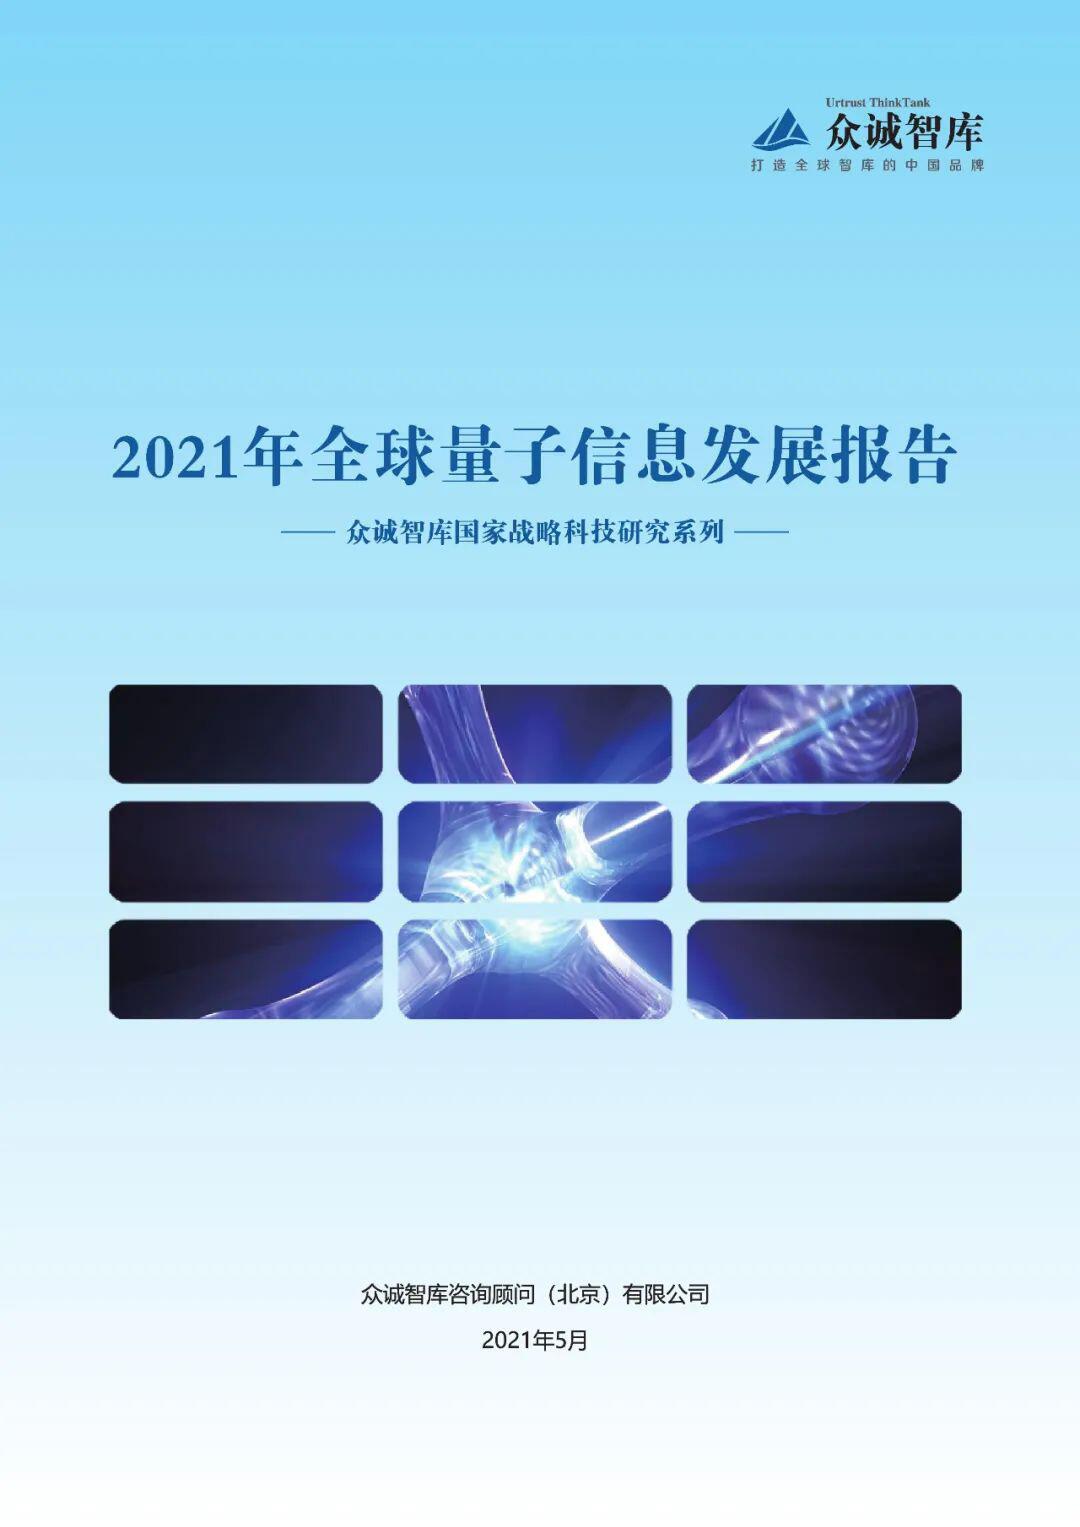 2021年全球量子信息发展报告